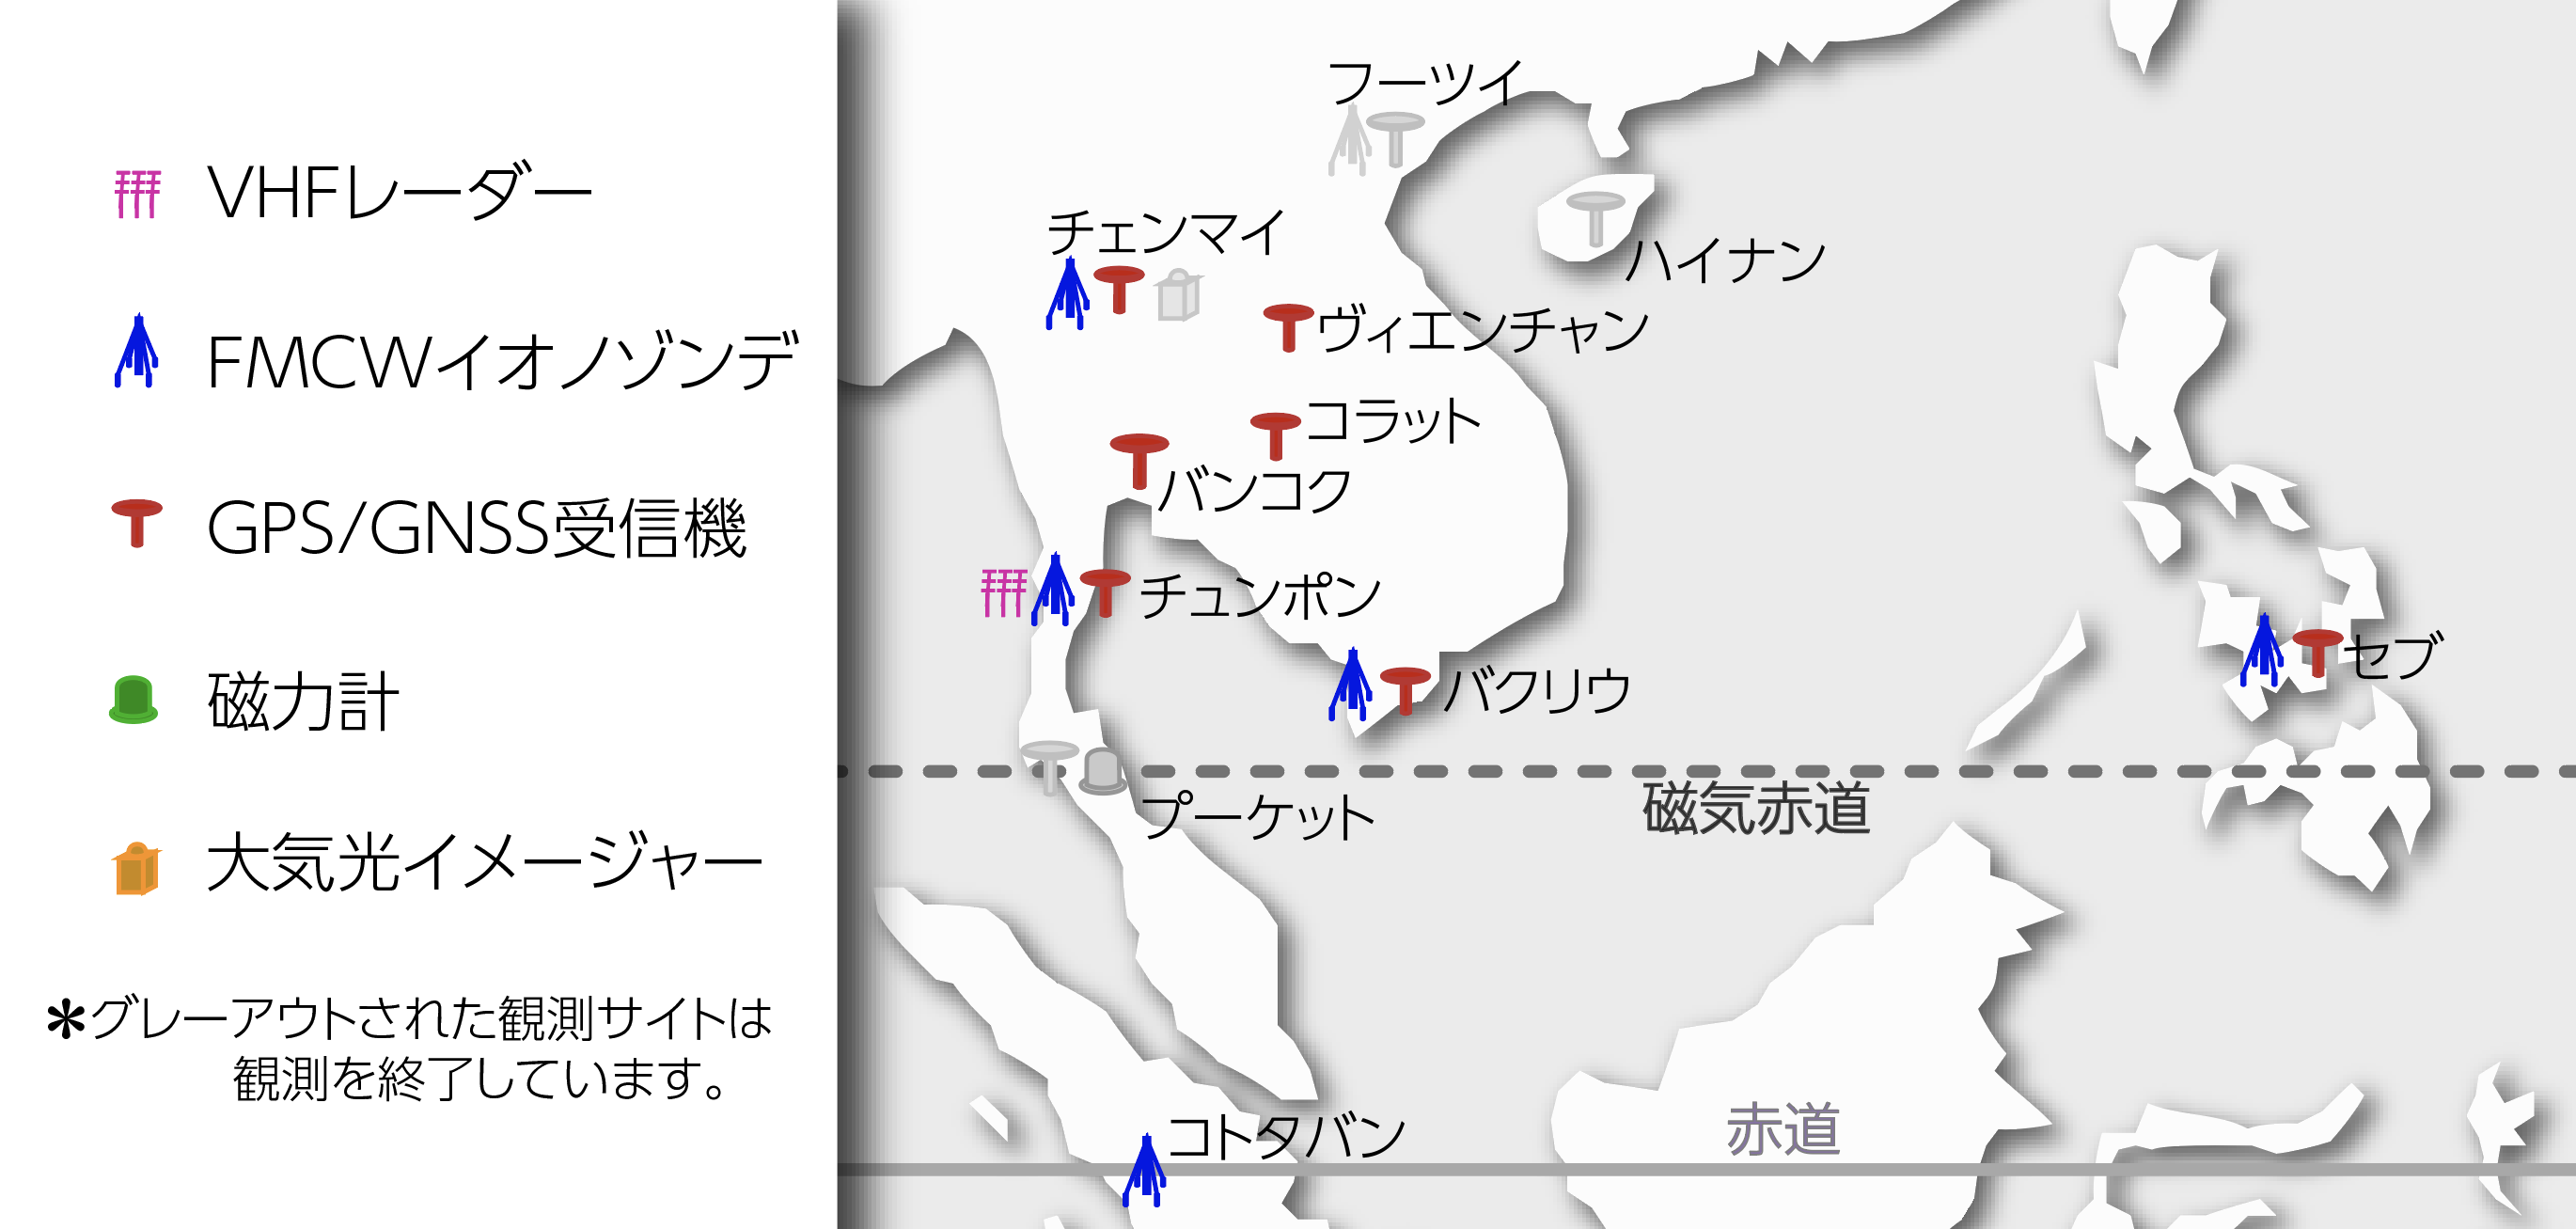 図3. SEALION（東南アジア電離層ネットワーク）